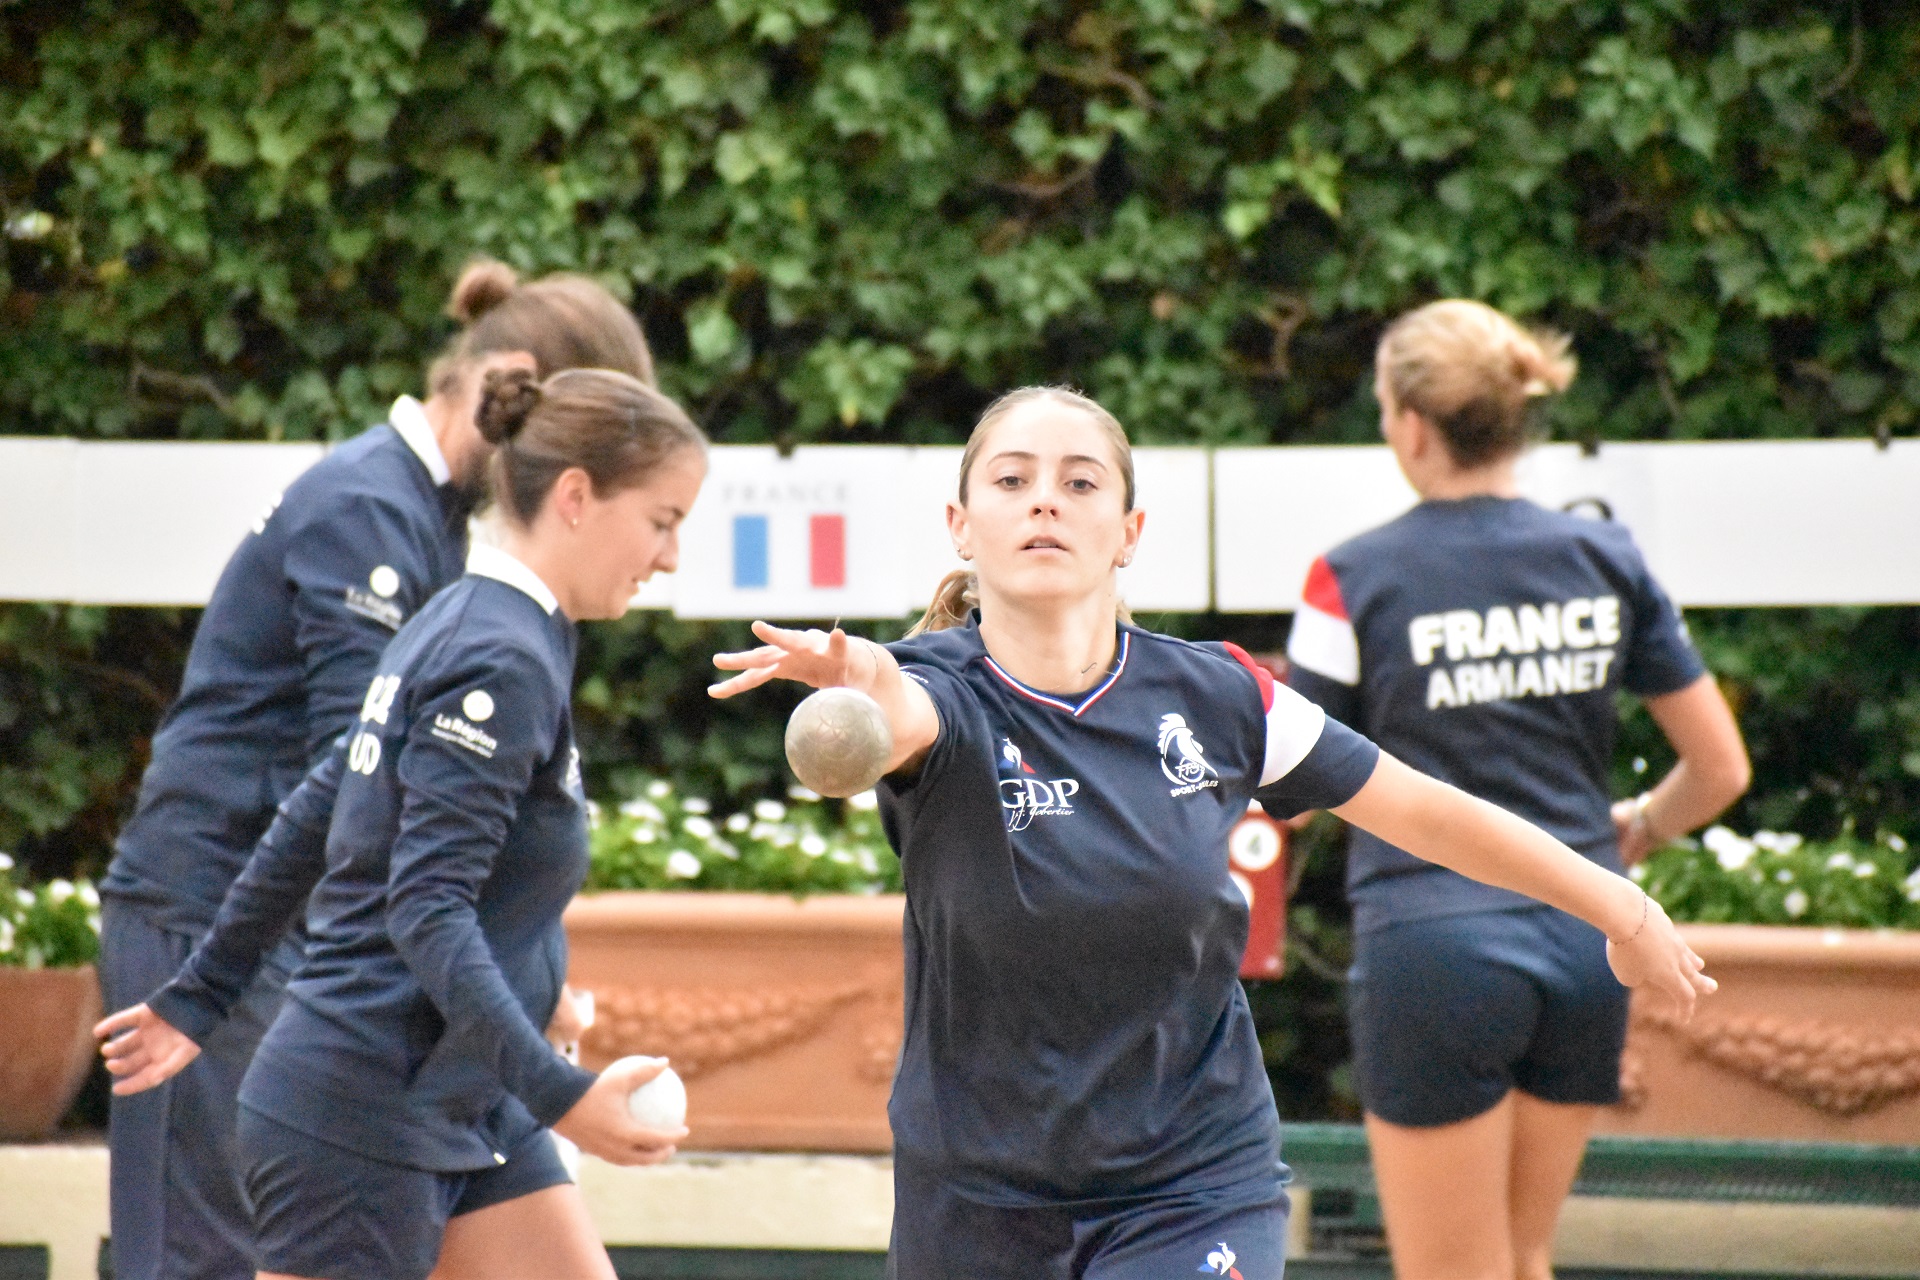 Les Françaises Annaelle Barazzutti (au tir) et Ophélie Armanet ont battu ce week-end le record du monde U23 féminin de l'épreuve du tir rapide en double avec 49 touches (photo Loic Poire)